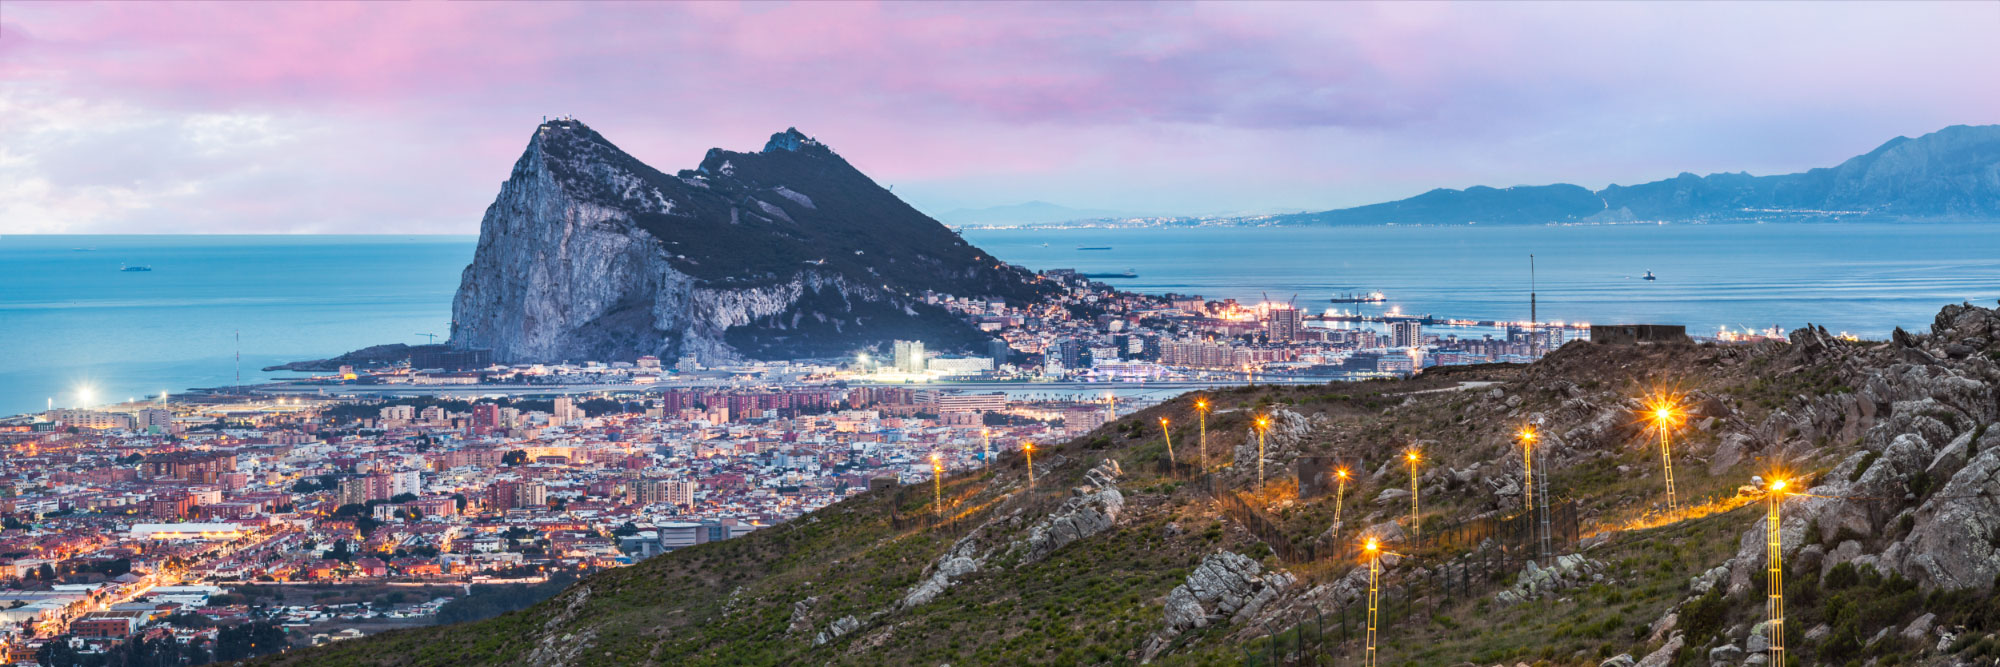 Le rocher de Gibraltar et les côtes africaines vus des hauteurs de La Linea de la Conception